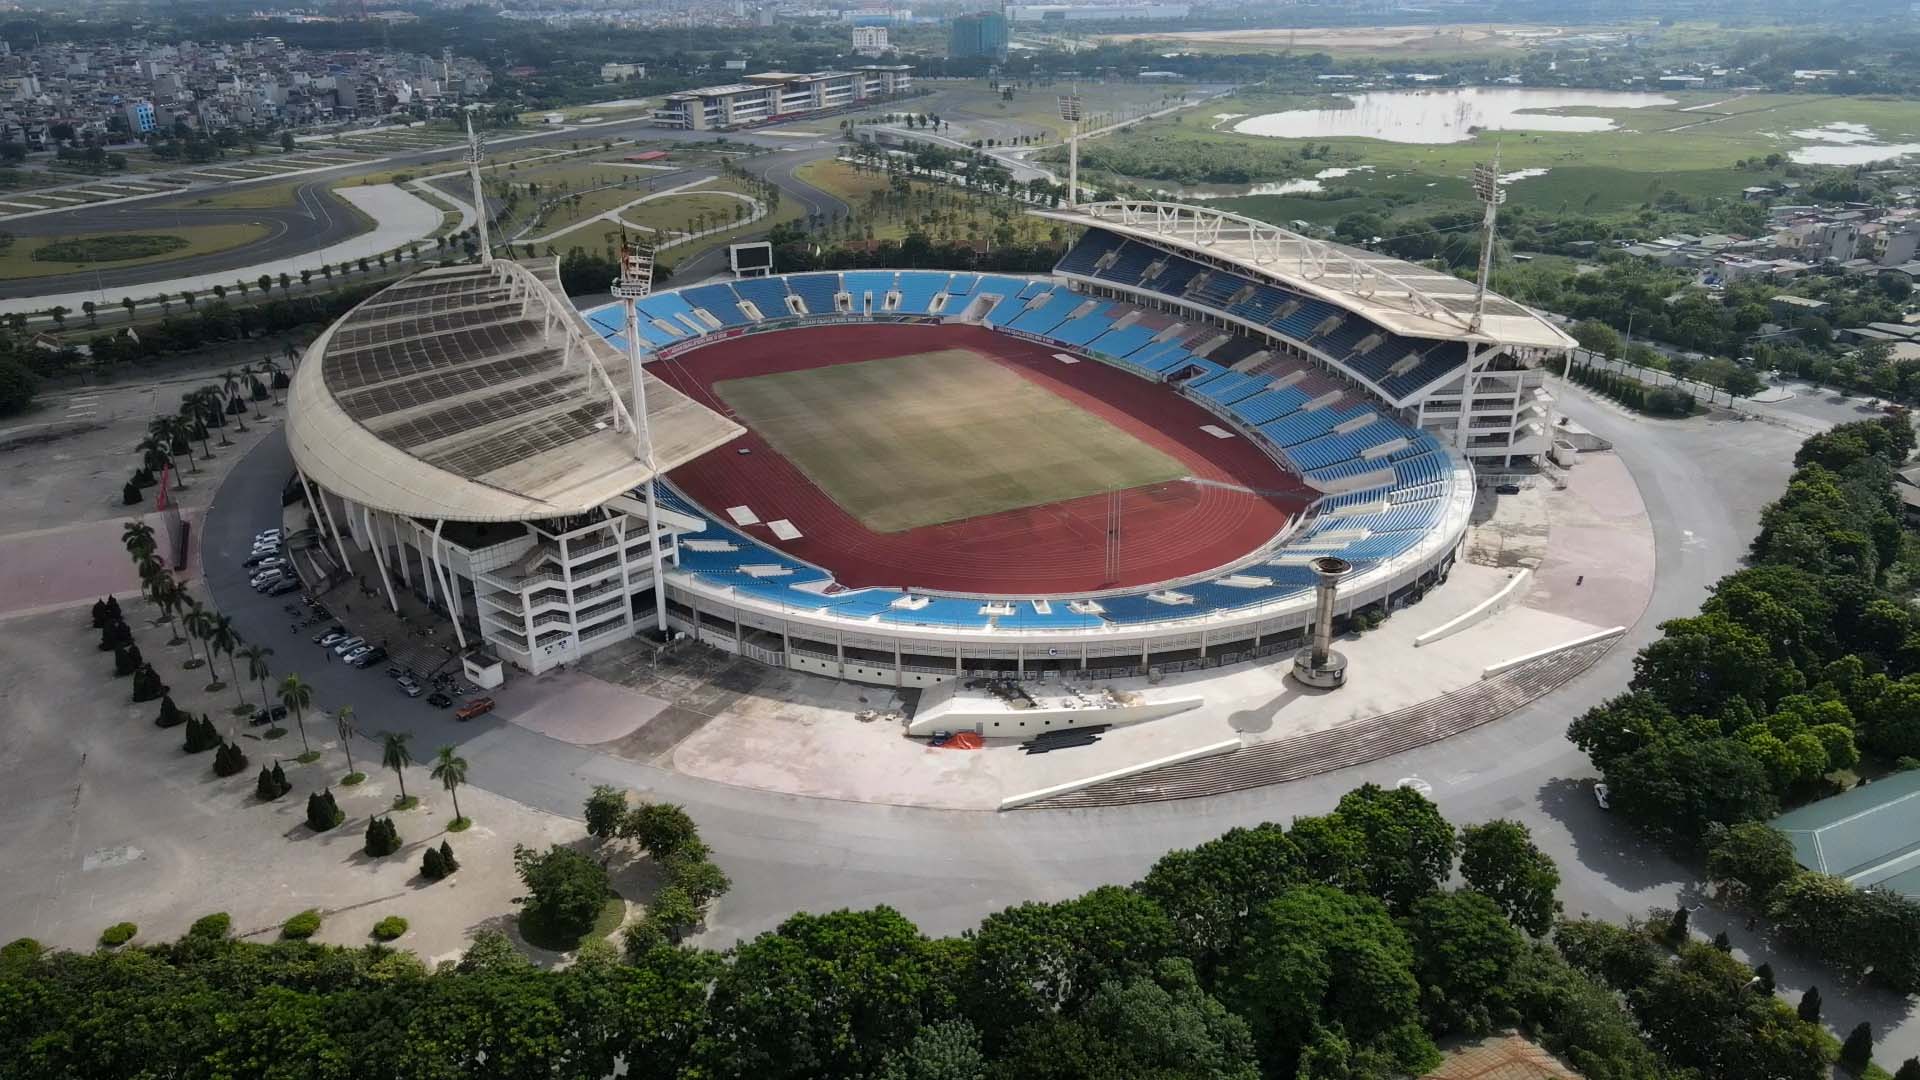 Sân vận động quốc gia Mỹ Đình - địa điểm vui chơi, tập thể dục Hà Nội